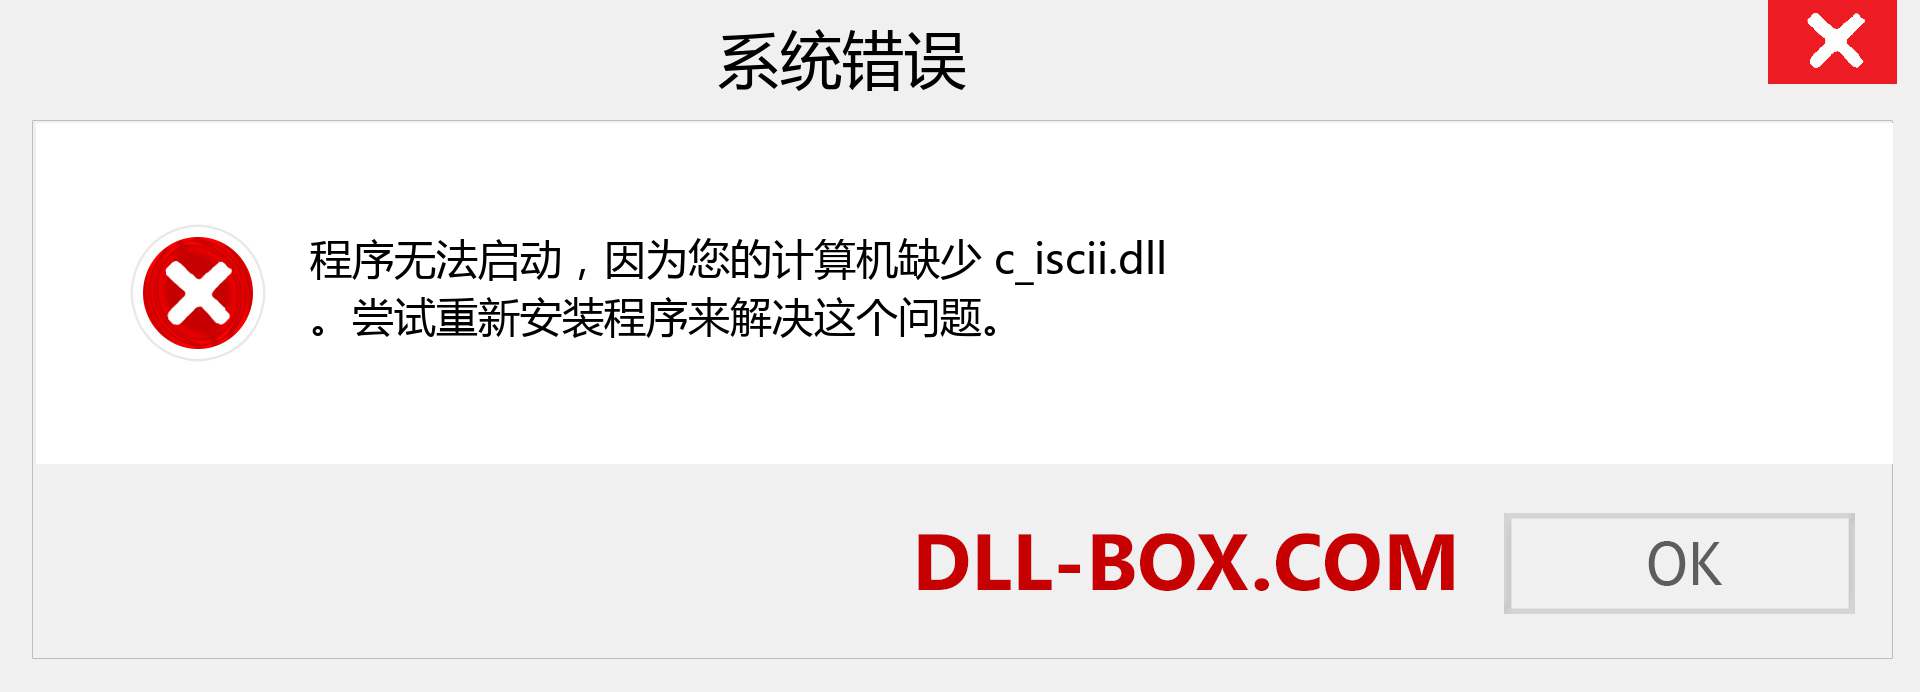 c_iscii.dll 文件丢失？。 适用于 Windows 7、8、10 的下载 - 修复 Windows、照片、图像上的 c_iscii dll 丢失错误